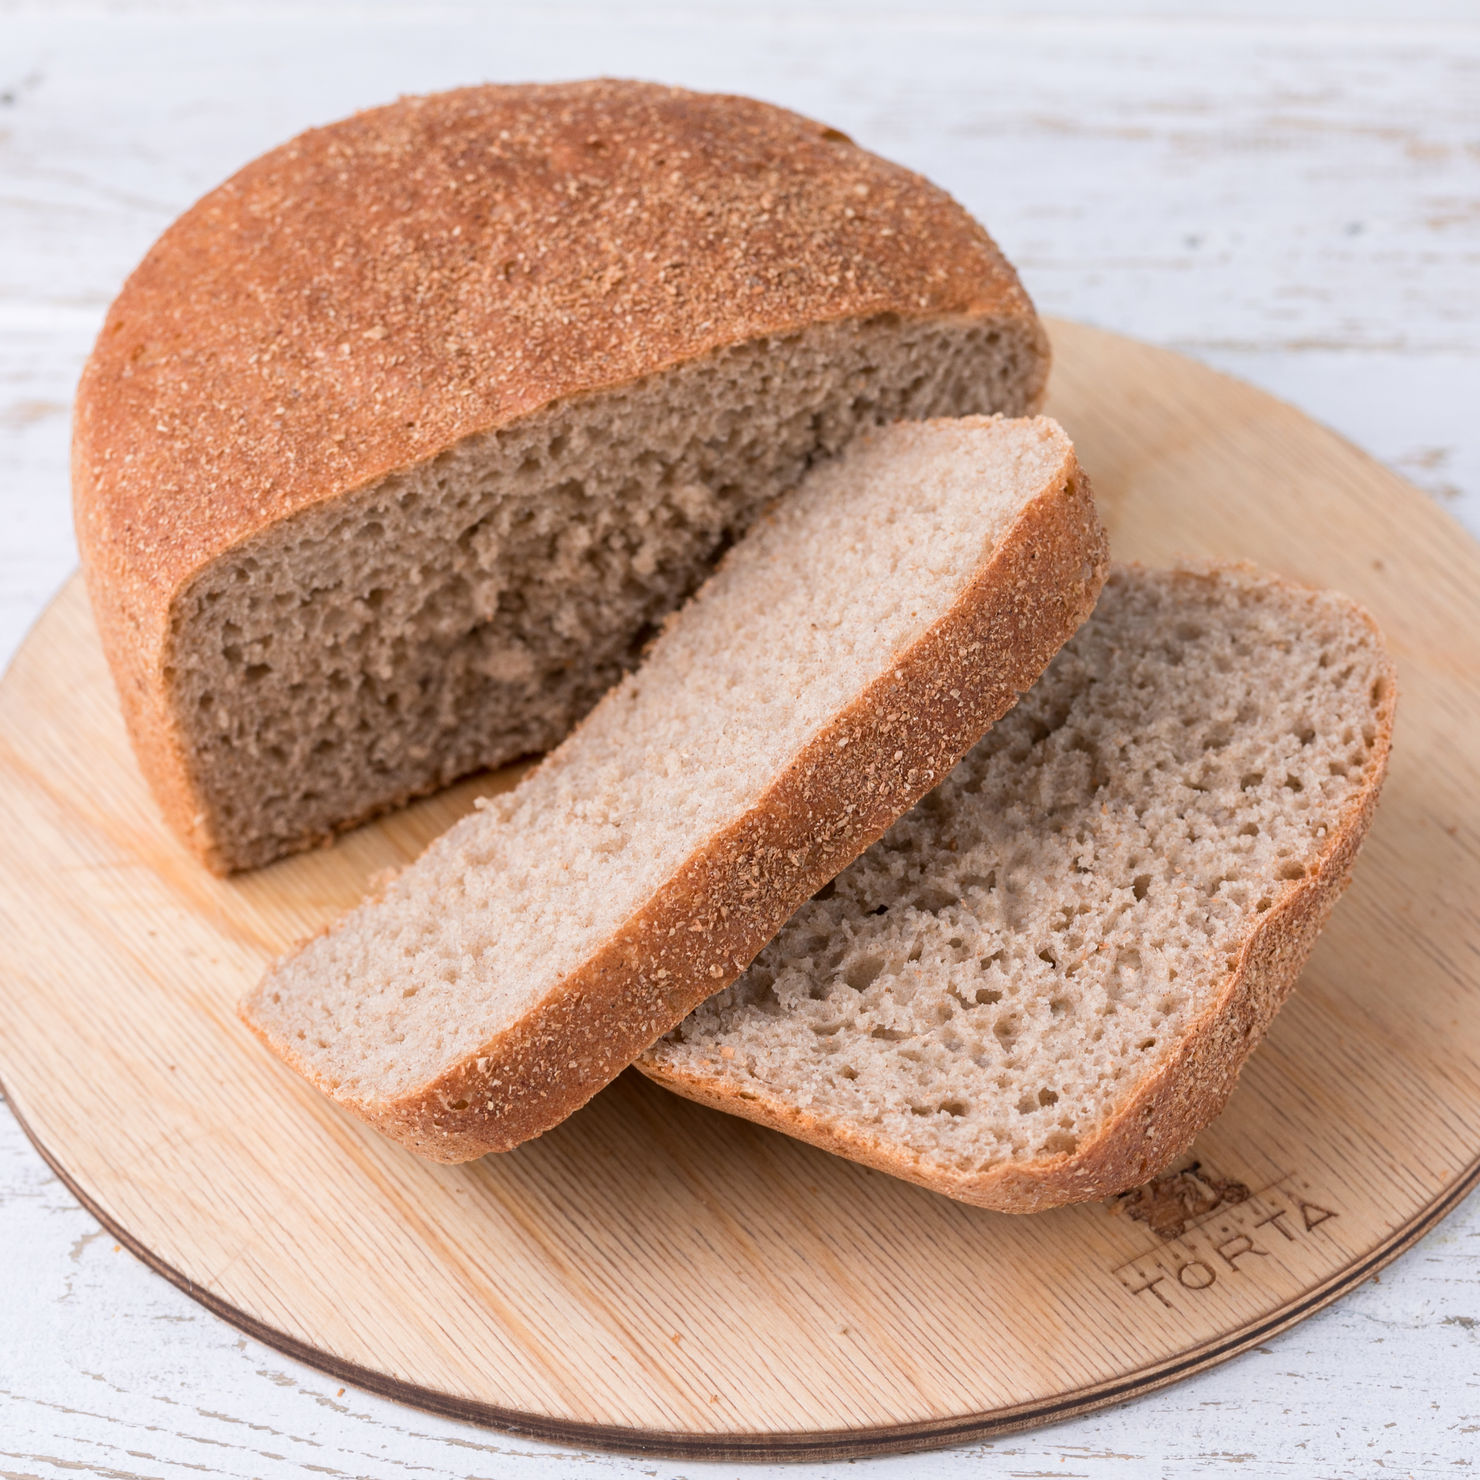 Пшеничный хлеб в форме. Ржано-пшеничный хлеб. Ржаной и ржано-пшеничный хлеб. Хлеб из ржано-пшеничной муки. Хлеб ржано-пшеничный и пшенично-ржаной.